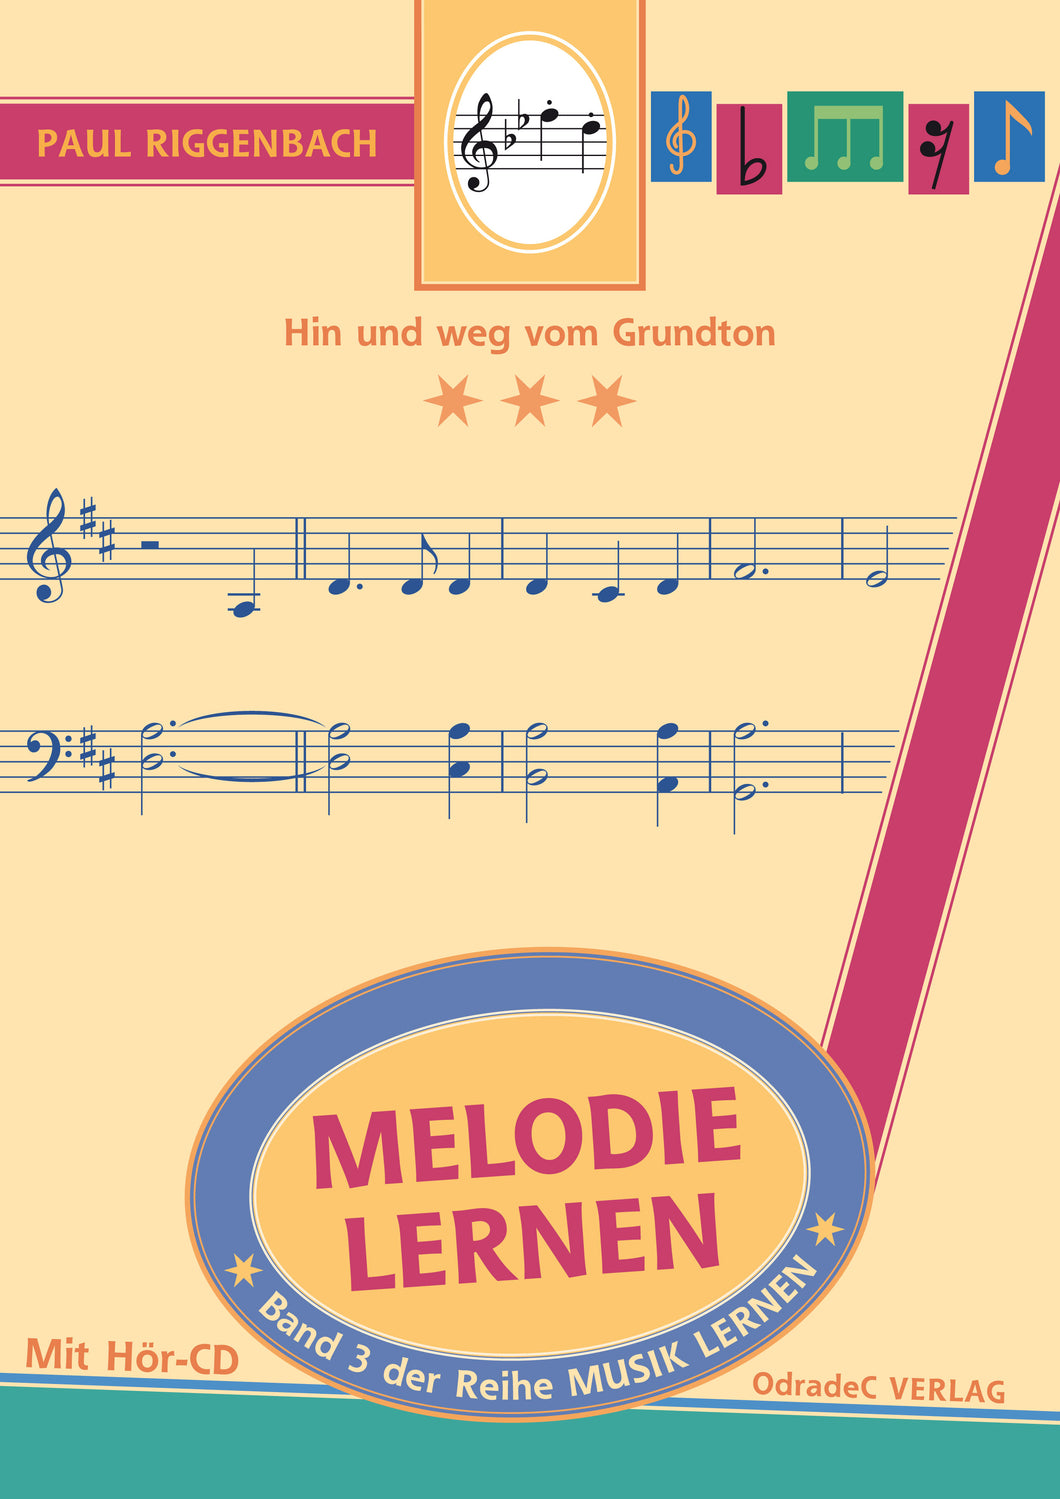 Riggenbach, Paul: Melodie lernen. Hin und weg vom Grundton. Mit Hör-CD (Buch)